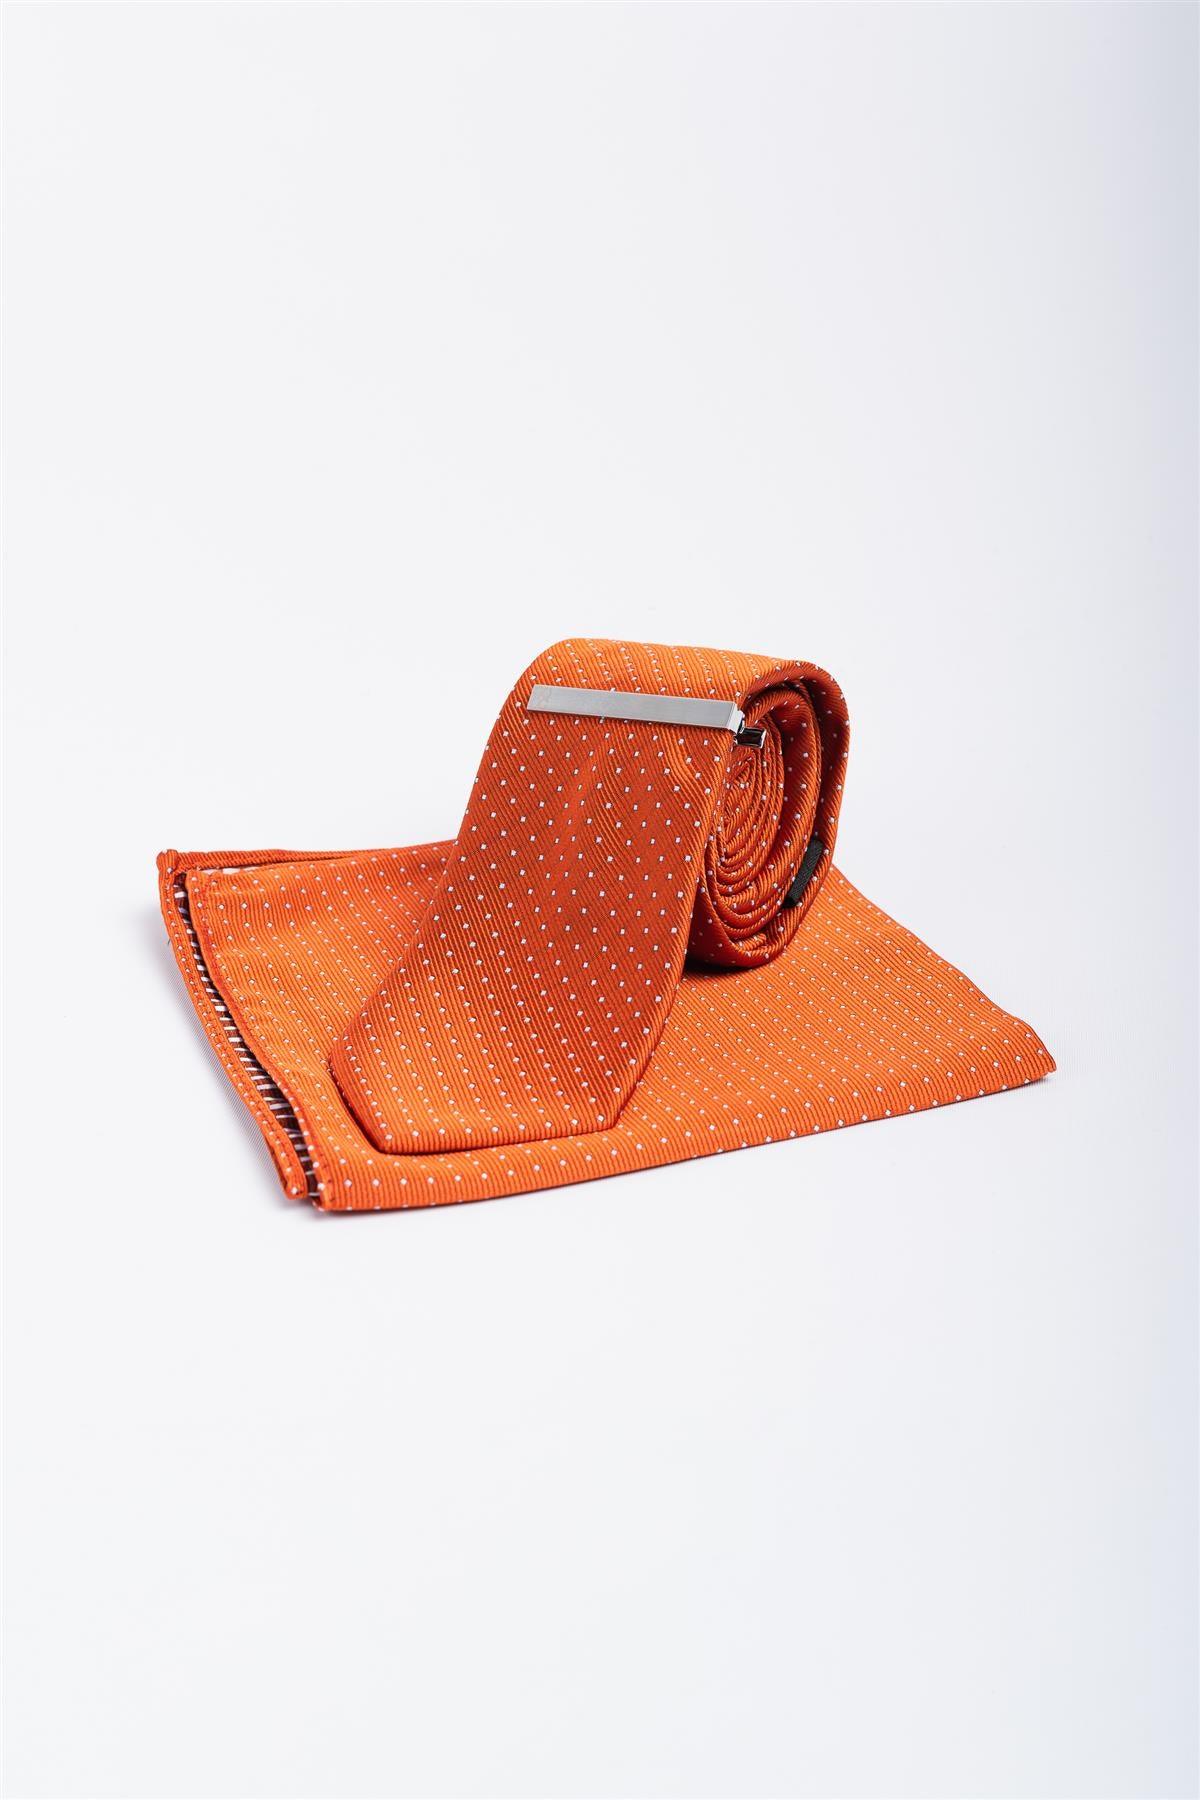 Cavani orange dot tie set